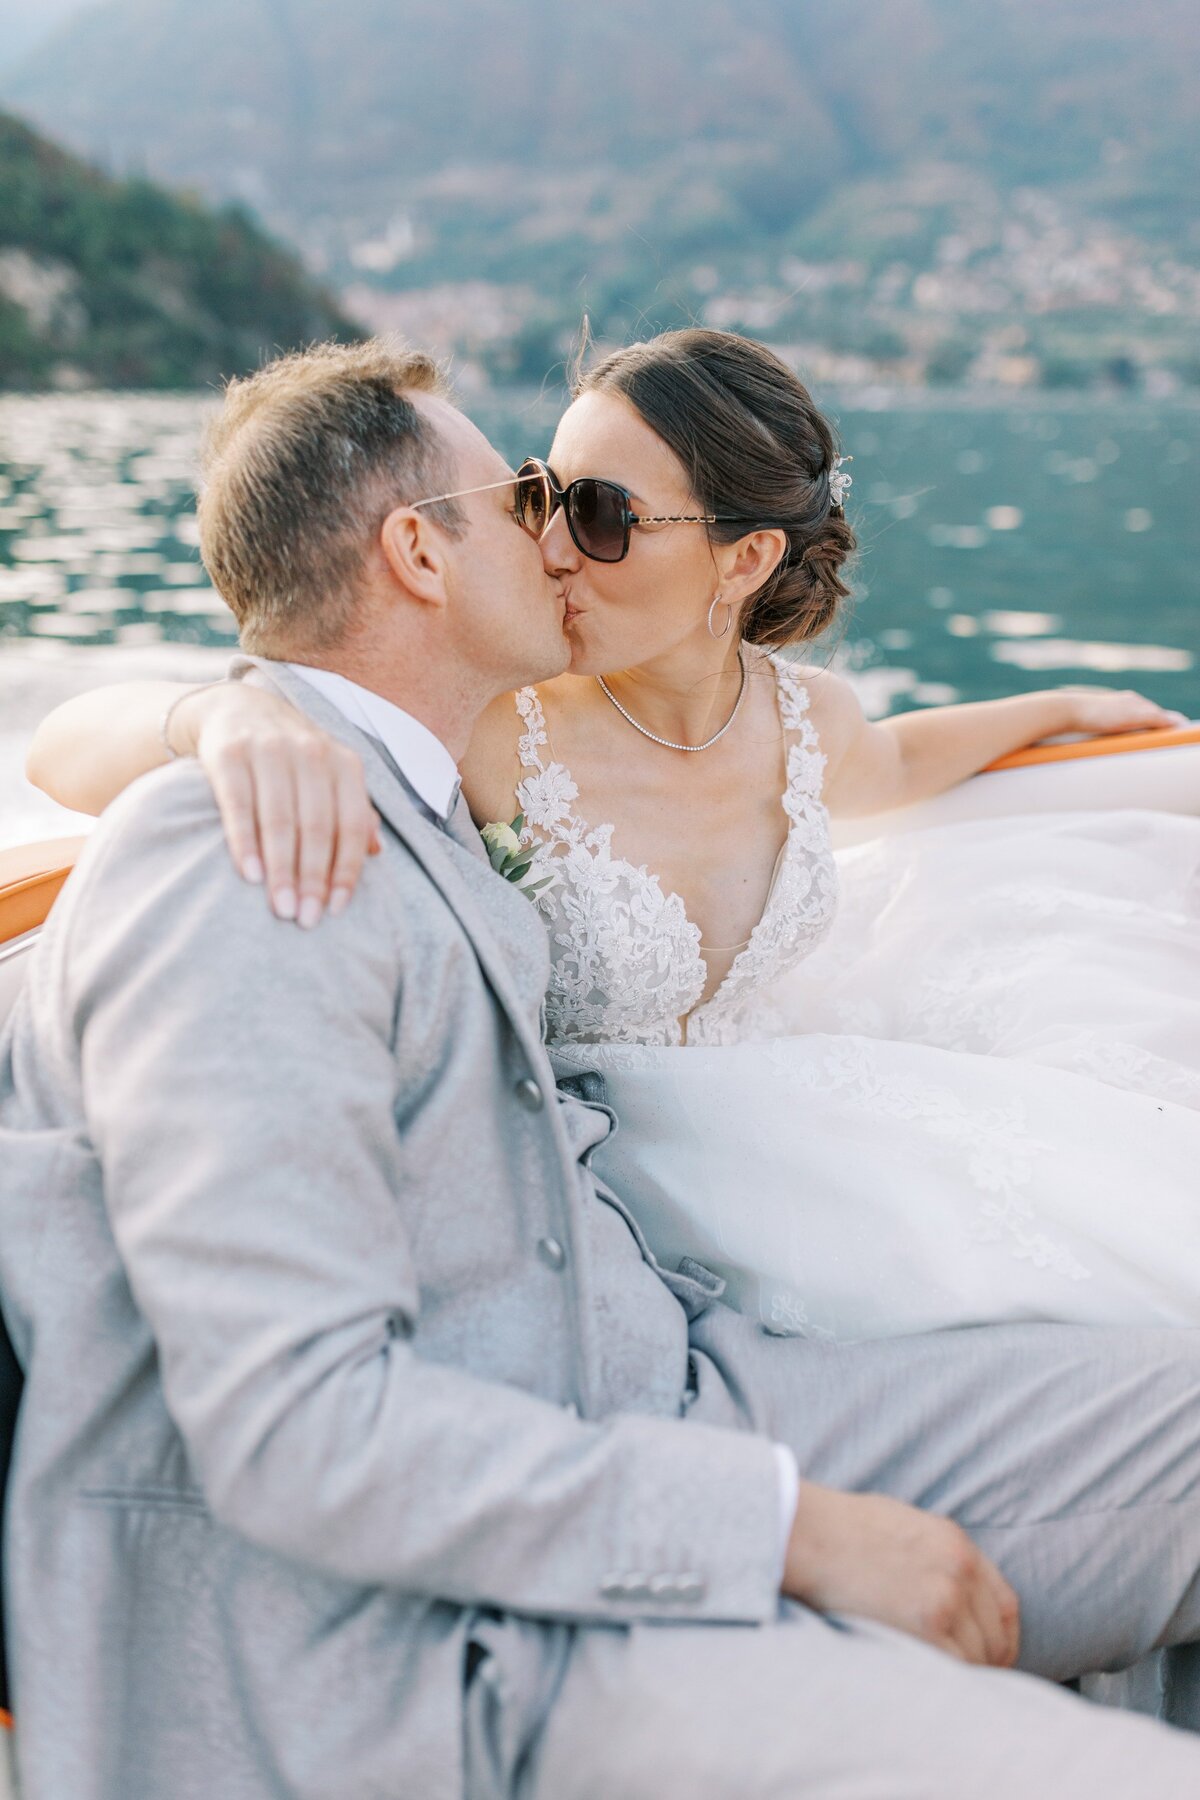 Brudpar pussas på en Rivabåt på Comosjön